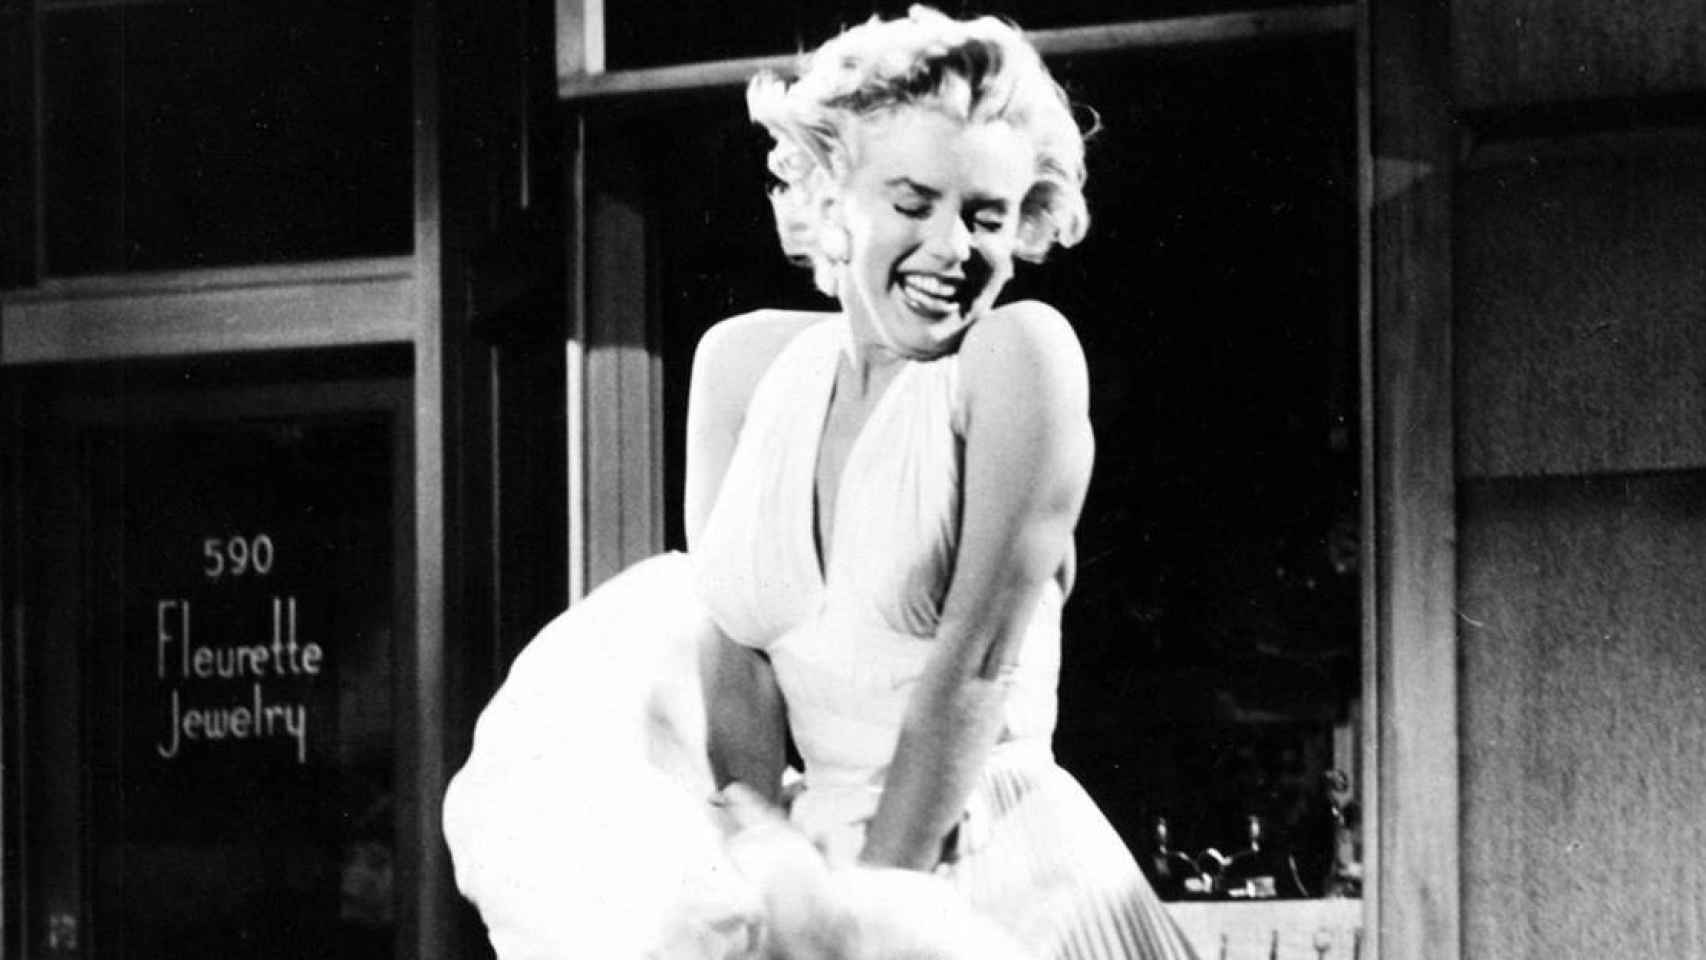 Lo que nunca podrás comprarte: el vestido blanco de Marilyn Monroe, el más  caro del mundo